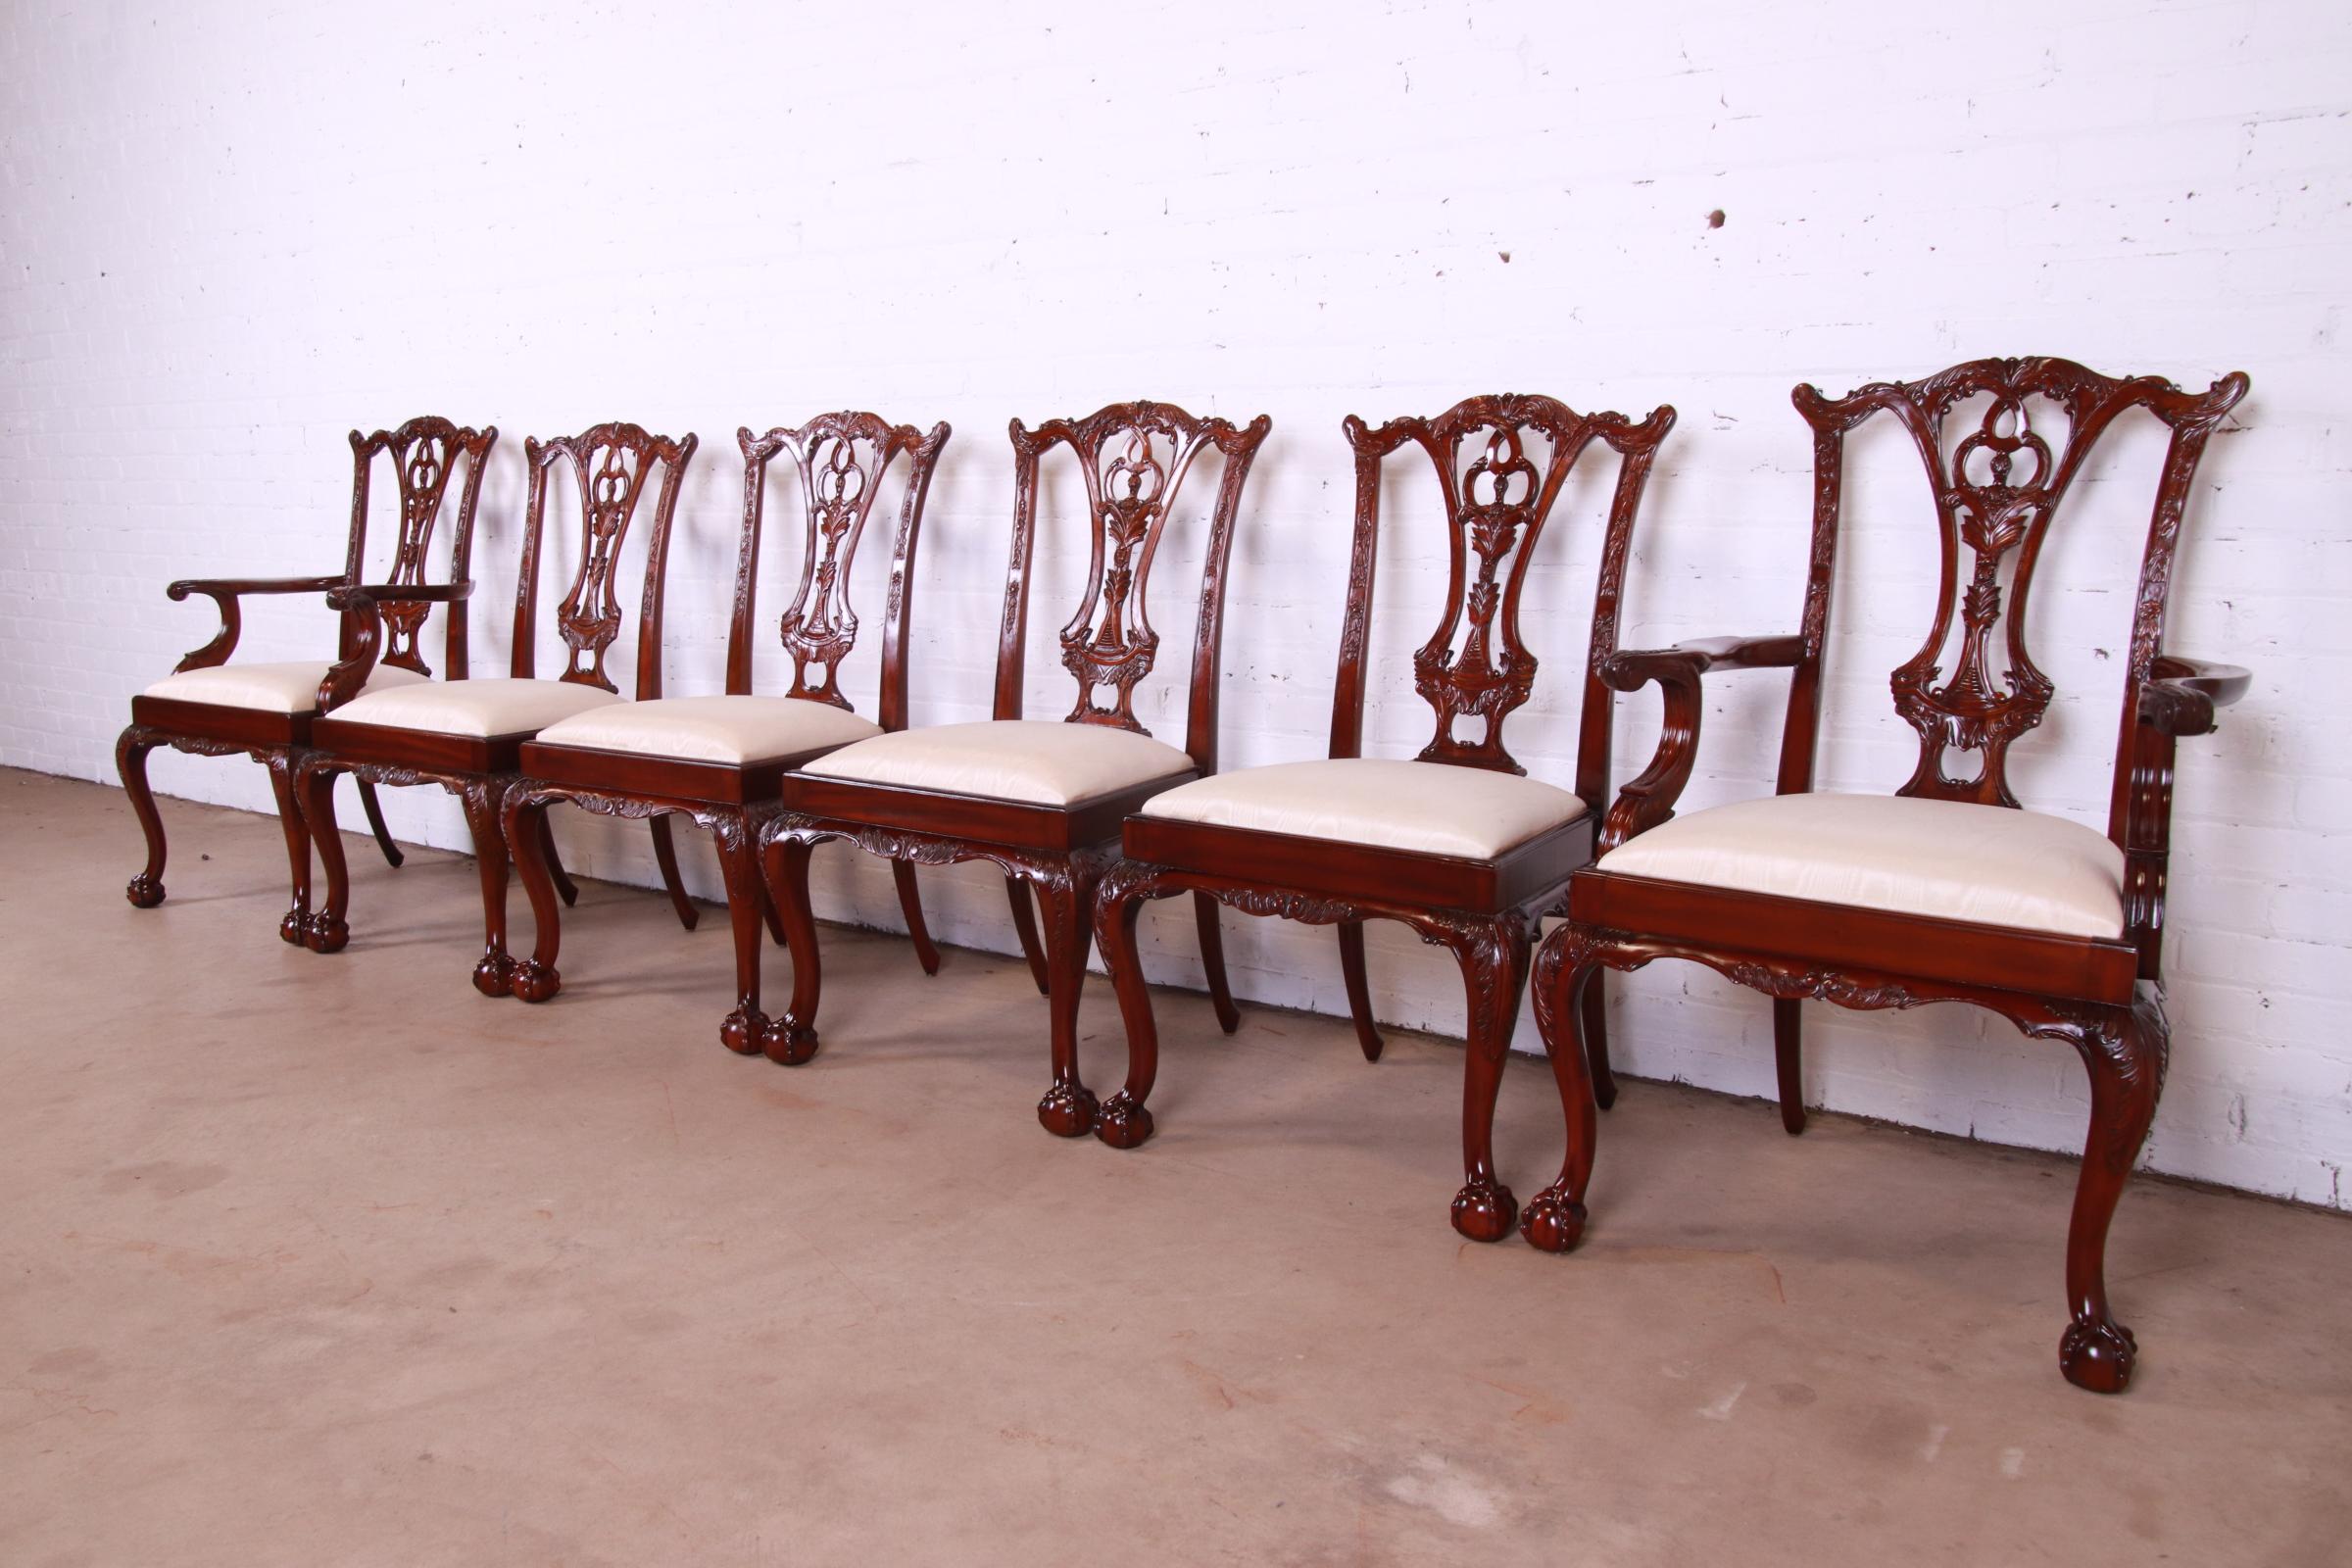 Ein wunderschönes Set von sechs Esszimmerstühlen im Chippendale-Stil

Von Maitland Smith

Ende des 20. Jahrhunderts

Rahmen aus massivem Mahagoni, Sitze mit elfenbeinfarbener Polsterung.

Maßnahmen:
Beistellstühle - 24,5 